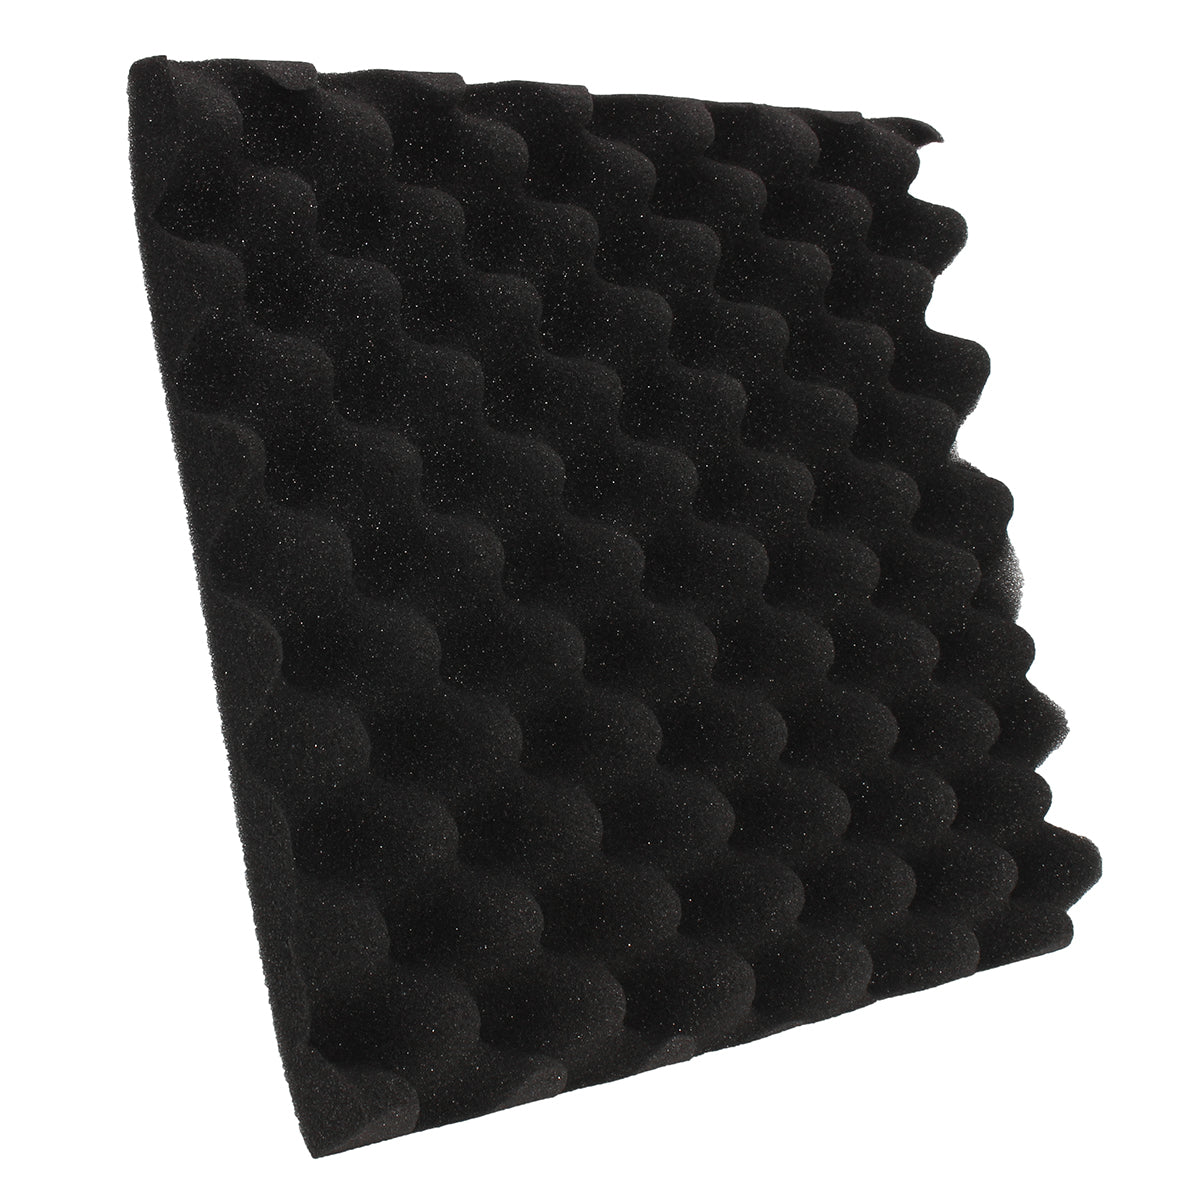 12Pcs/Set Studio Acoustic Foam Panels Tile Sound Insulation Proofing 30x30x4cm